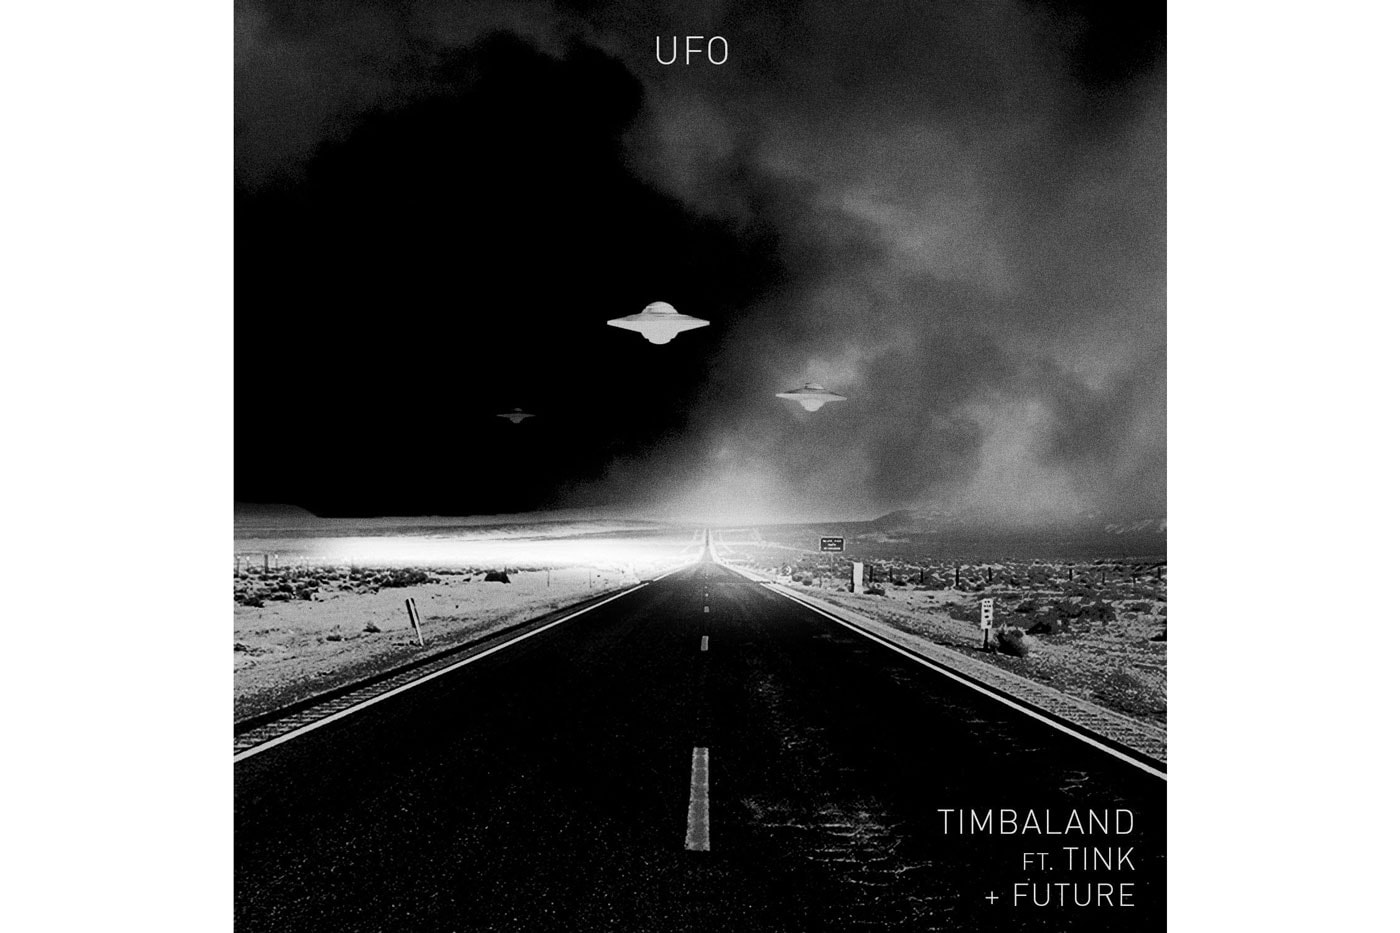 Timbaland featuring Future & Tink - UFO